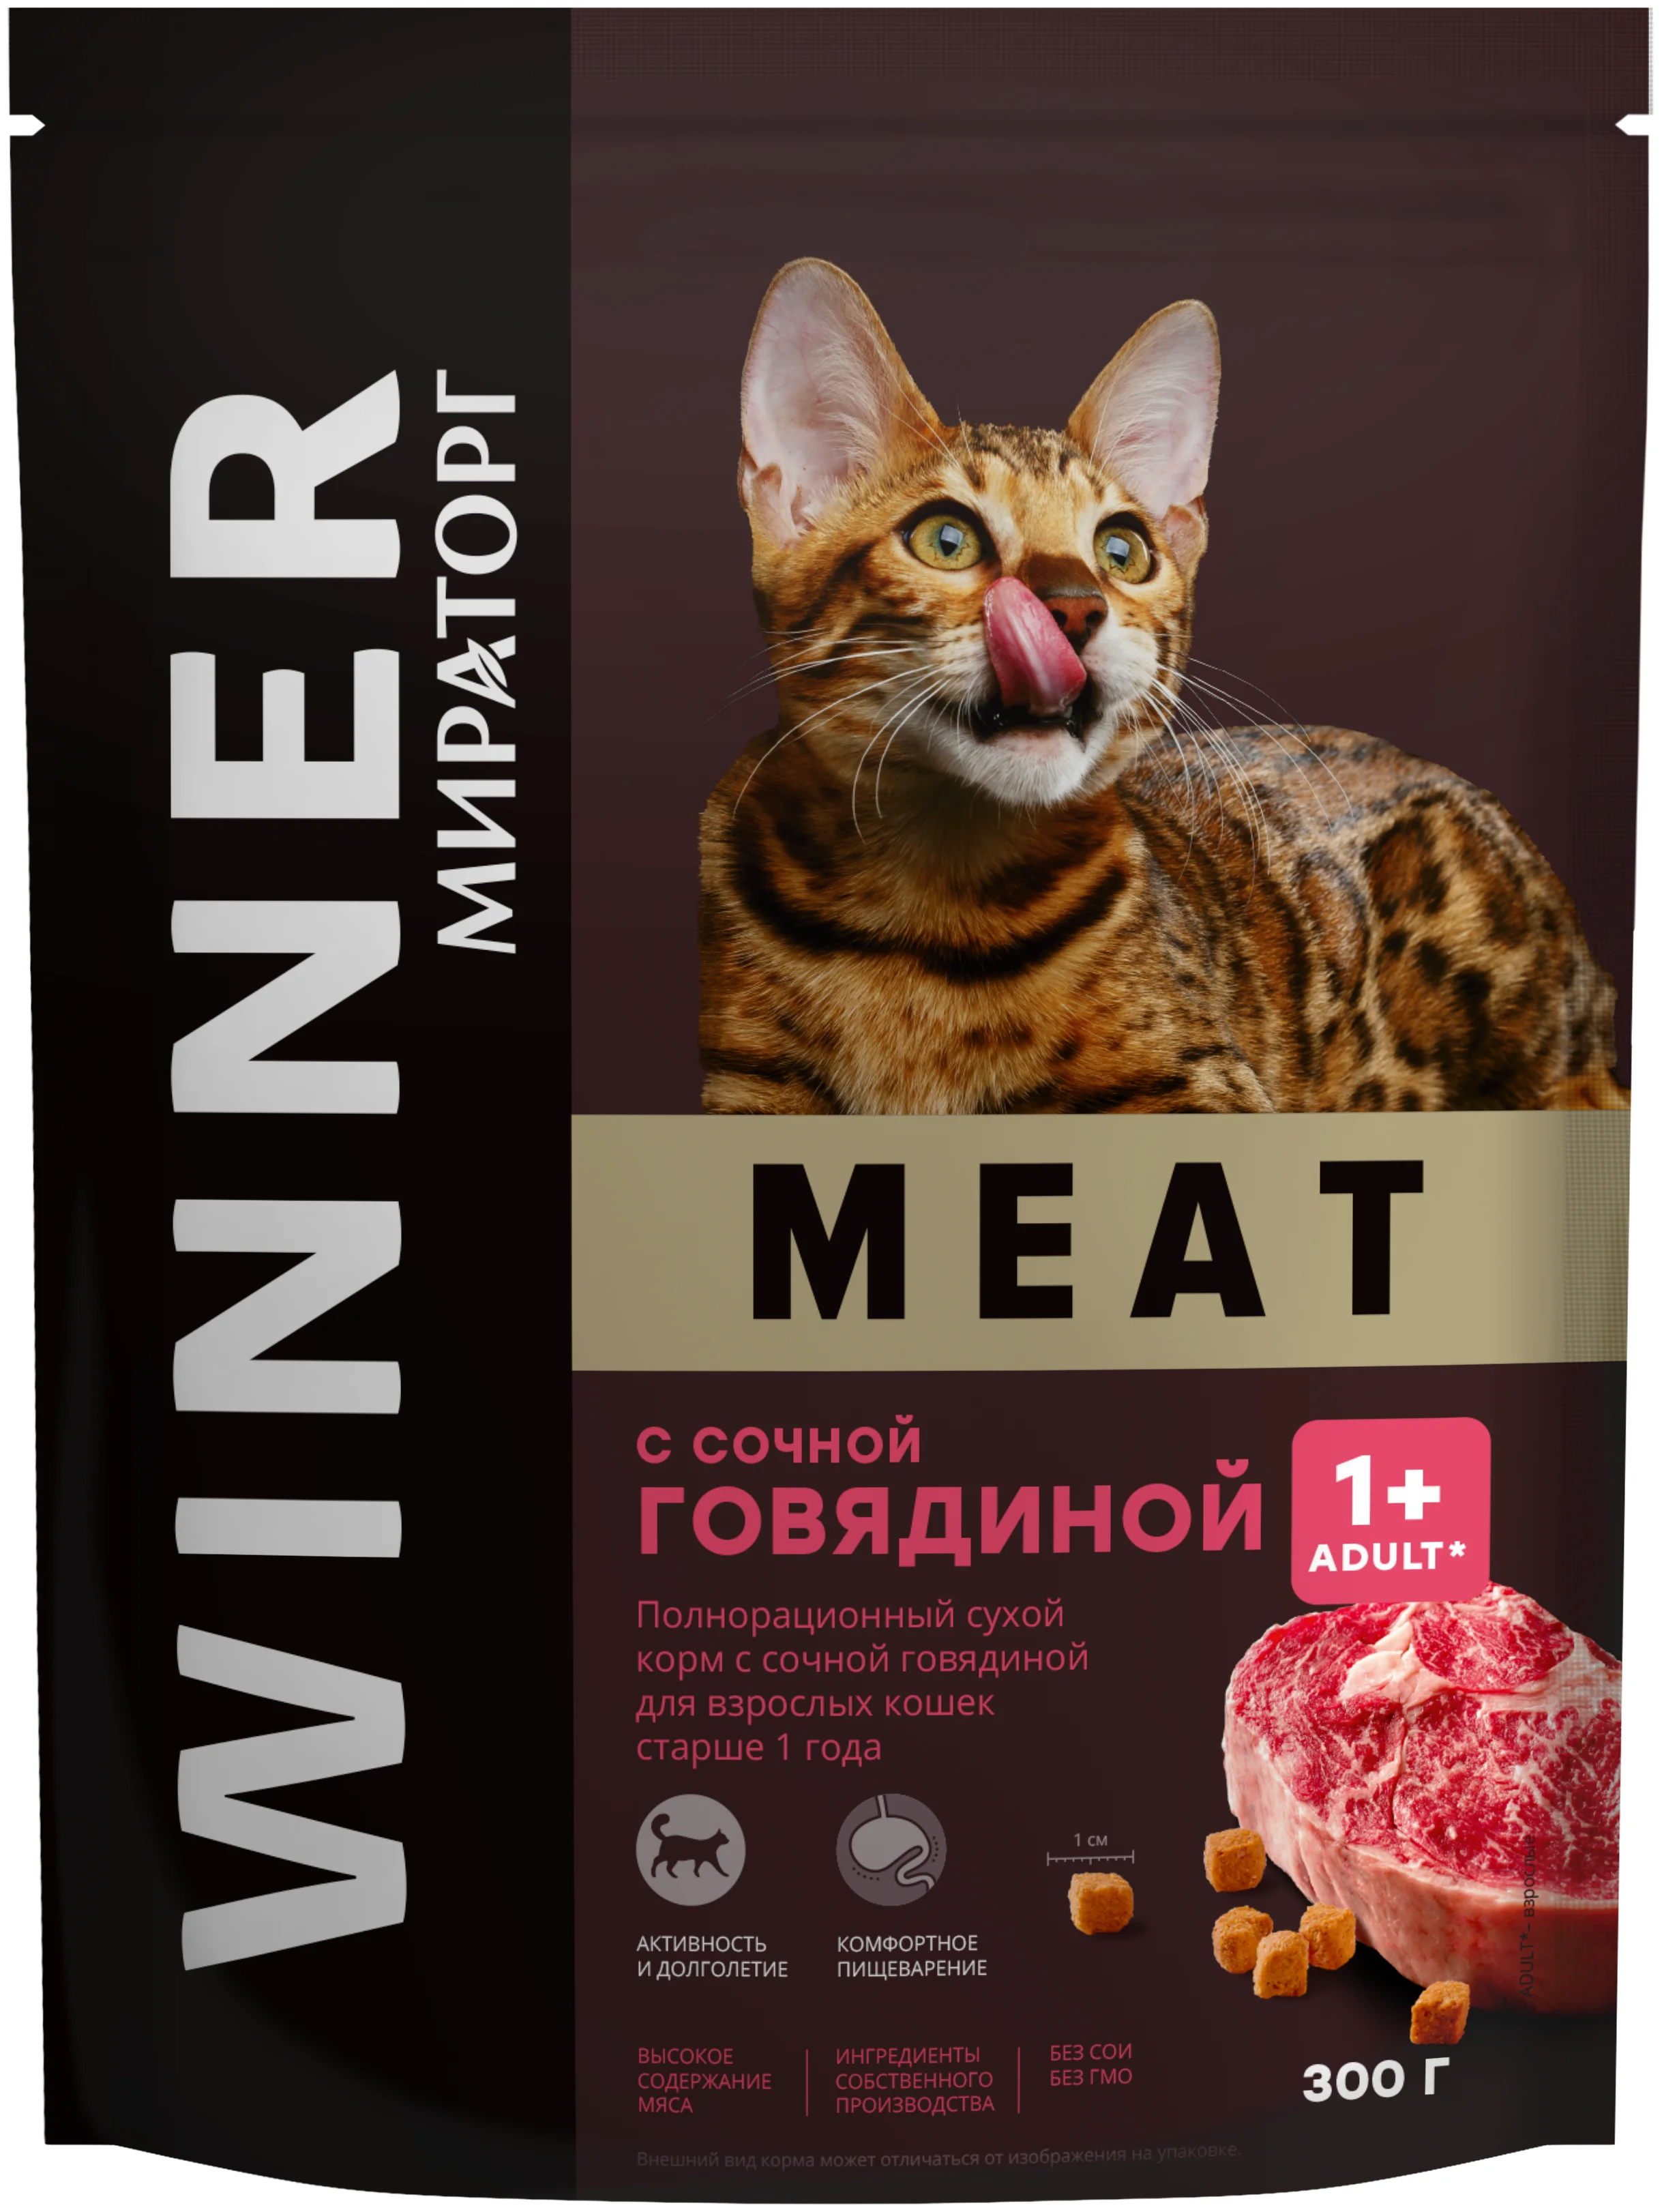 Сухой корм для кошек Мираторг Winner Meat с сочной говядиной, 300 г